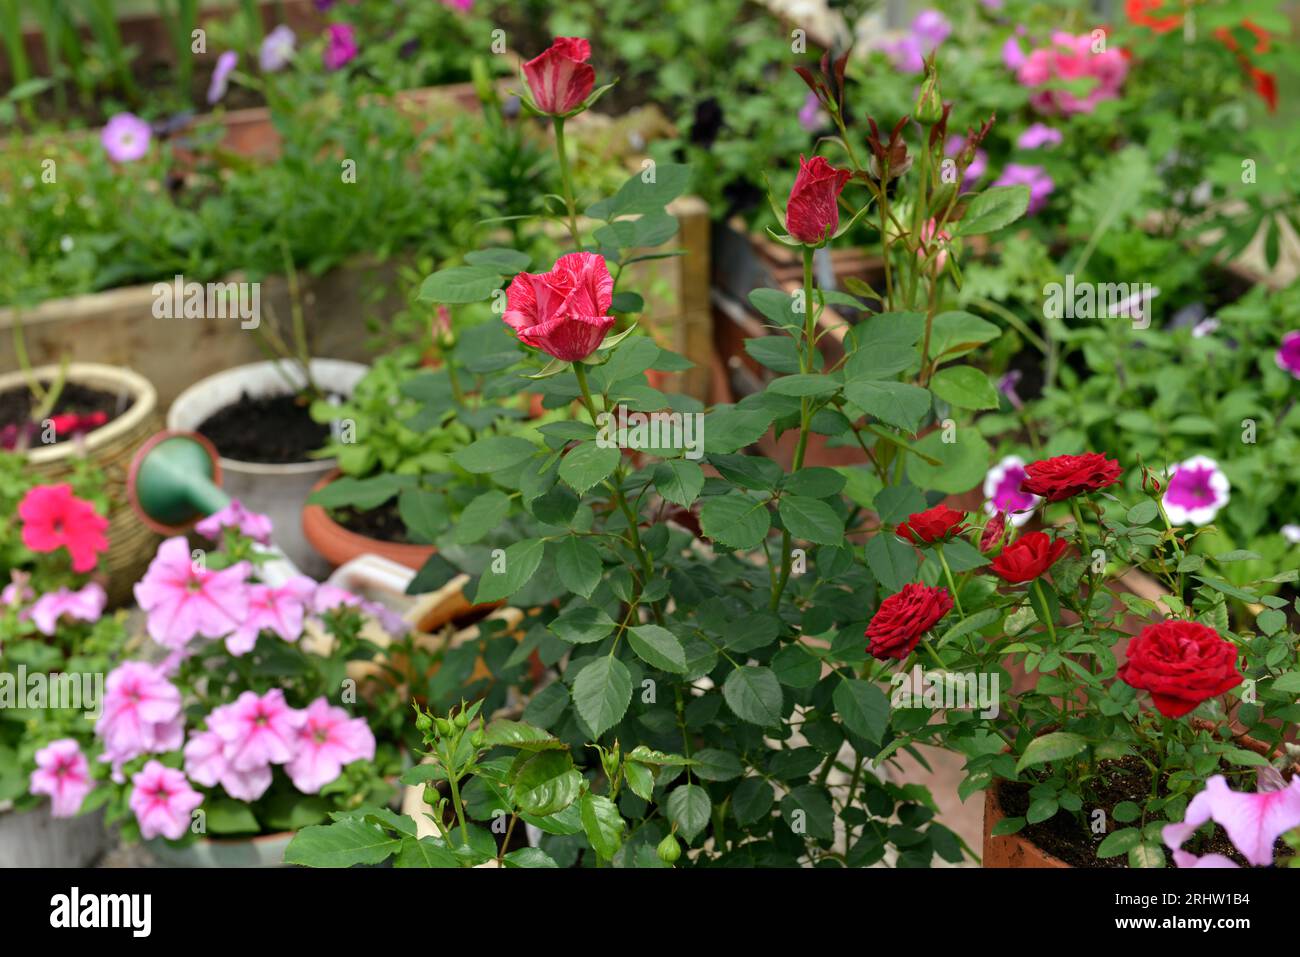 Schöne Blumen von Rosen und Petunien im Gewächshaus. Vintage-Garten und Pflanzobjekte, botanisches Stillleben mit Sommer- und Frühlingspflanzen Stockfoto